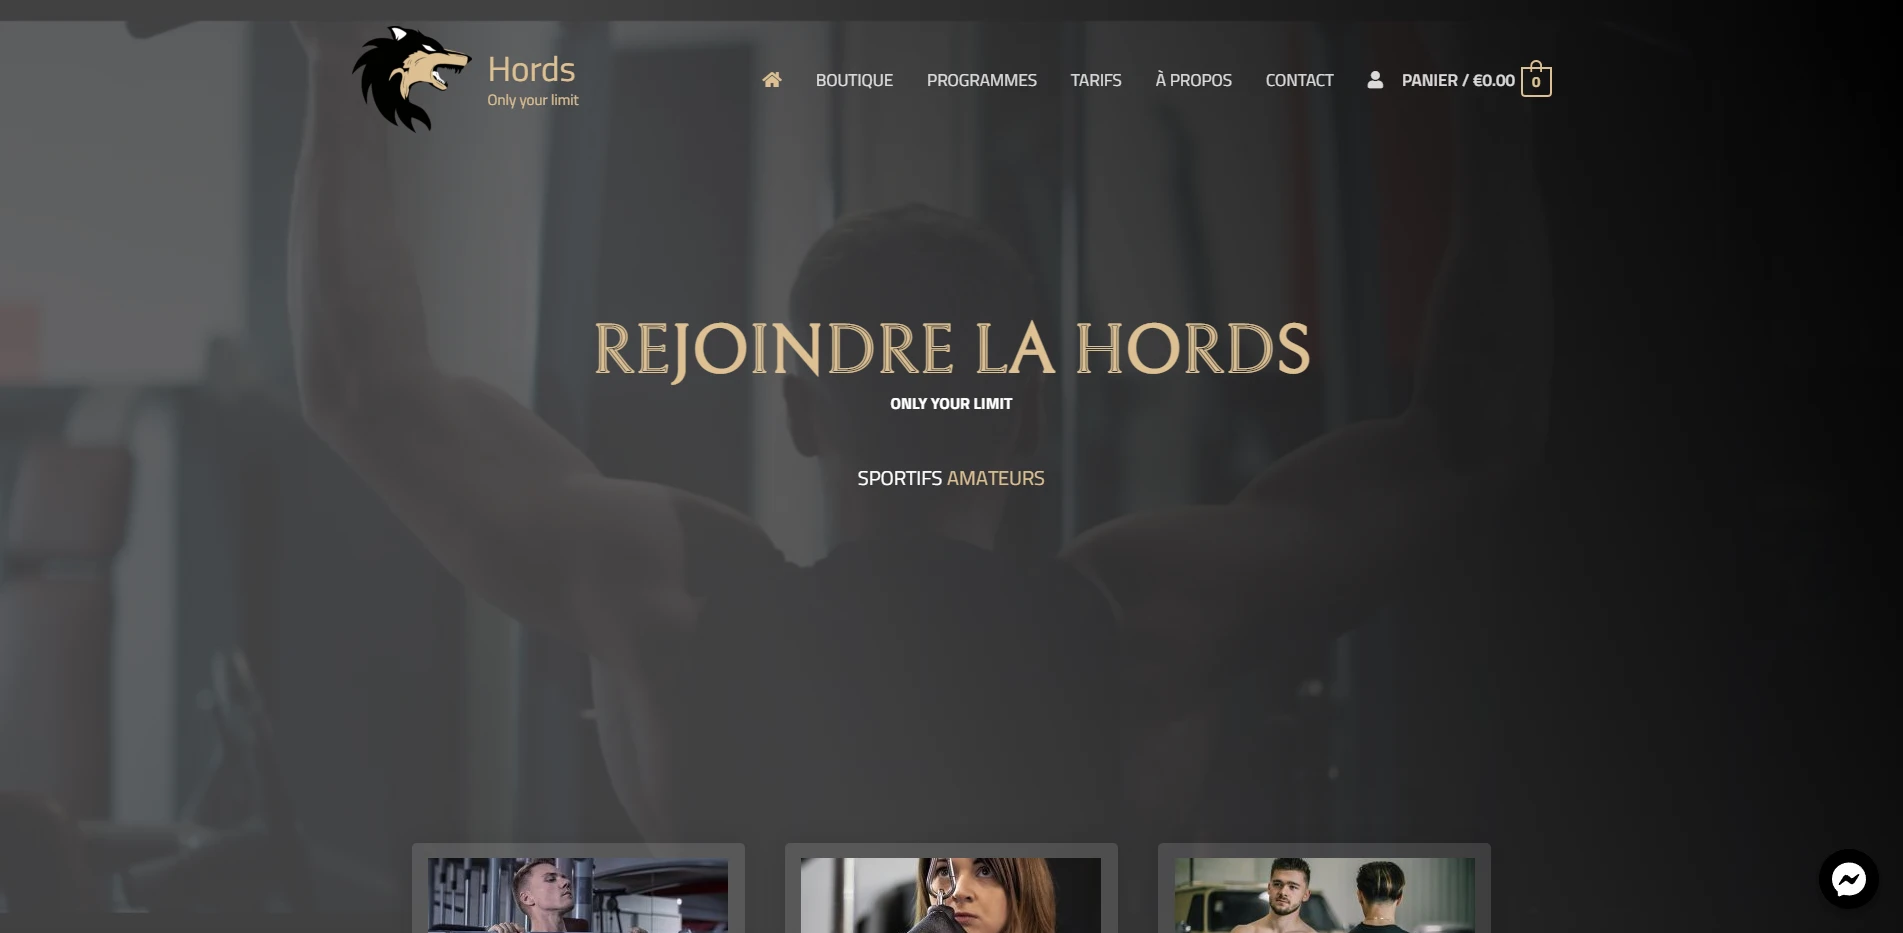 Illustration de la page d'accueil du site web hords.fr